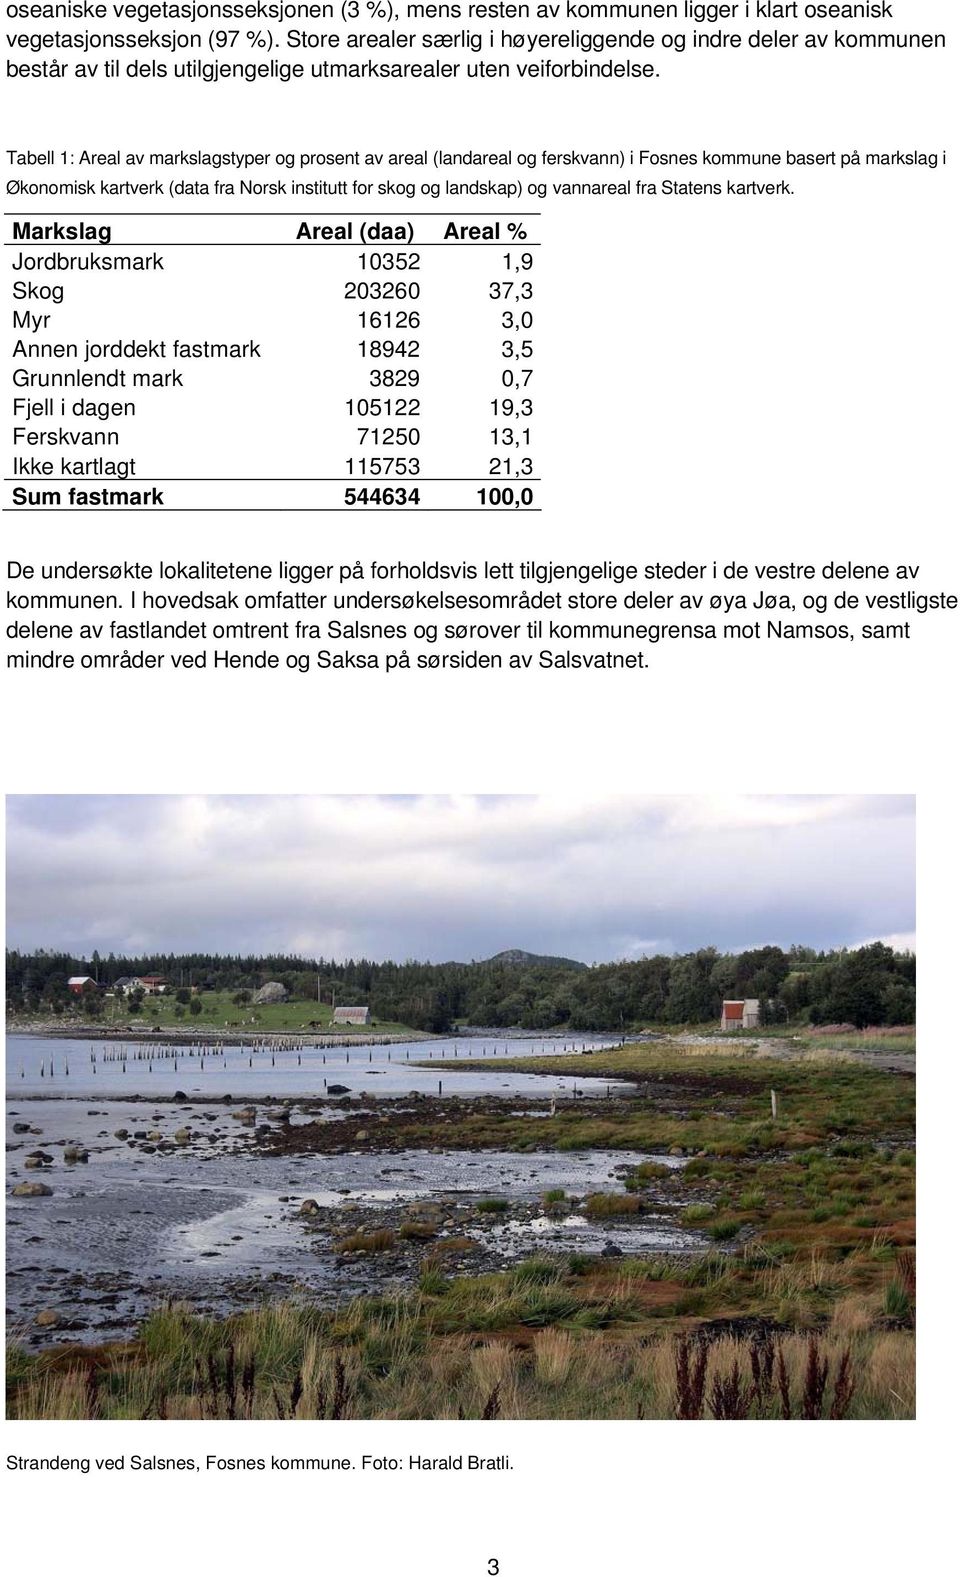 Tabell 1: Areal av markslagstyper og prosent av areal (landareal og ferskvann) i Fosnes kommune basert på markslag i Økonomisk kartverk (data fra Norsk institutt for skog og landskap) og vannareal